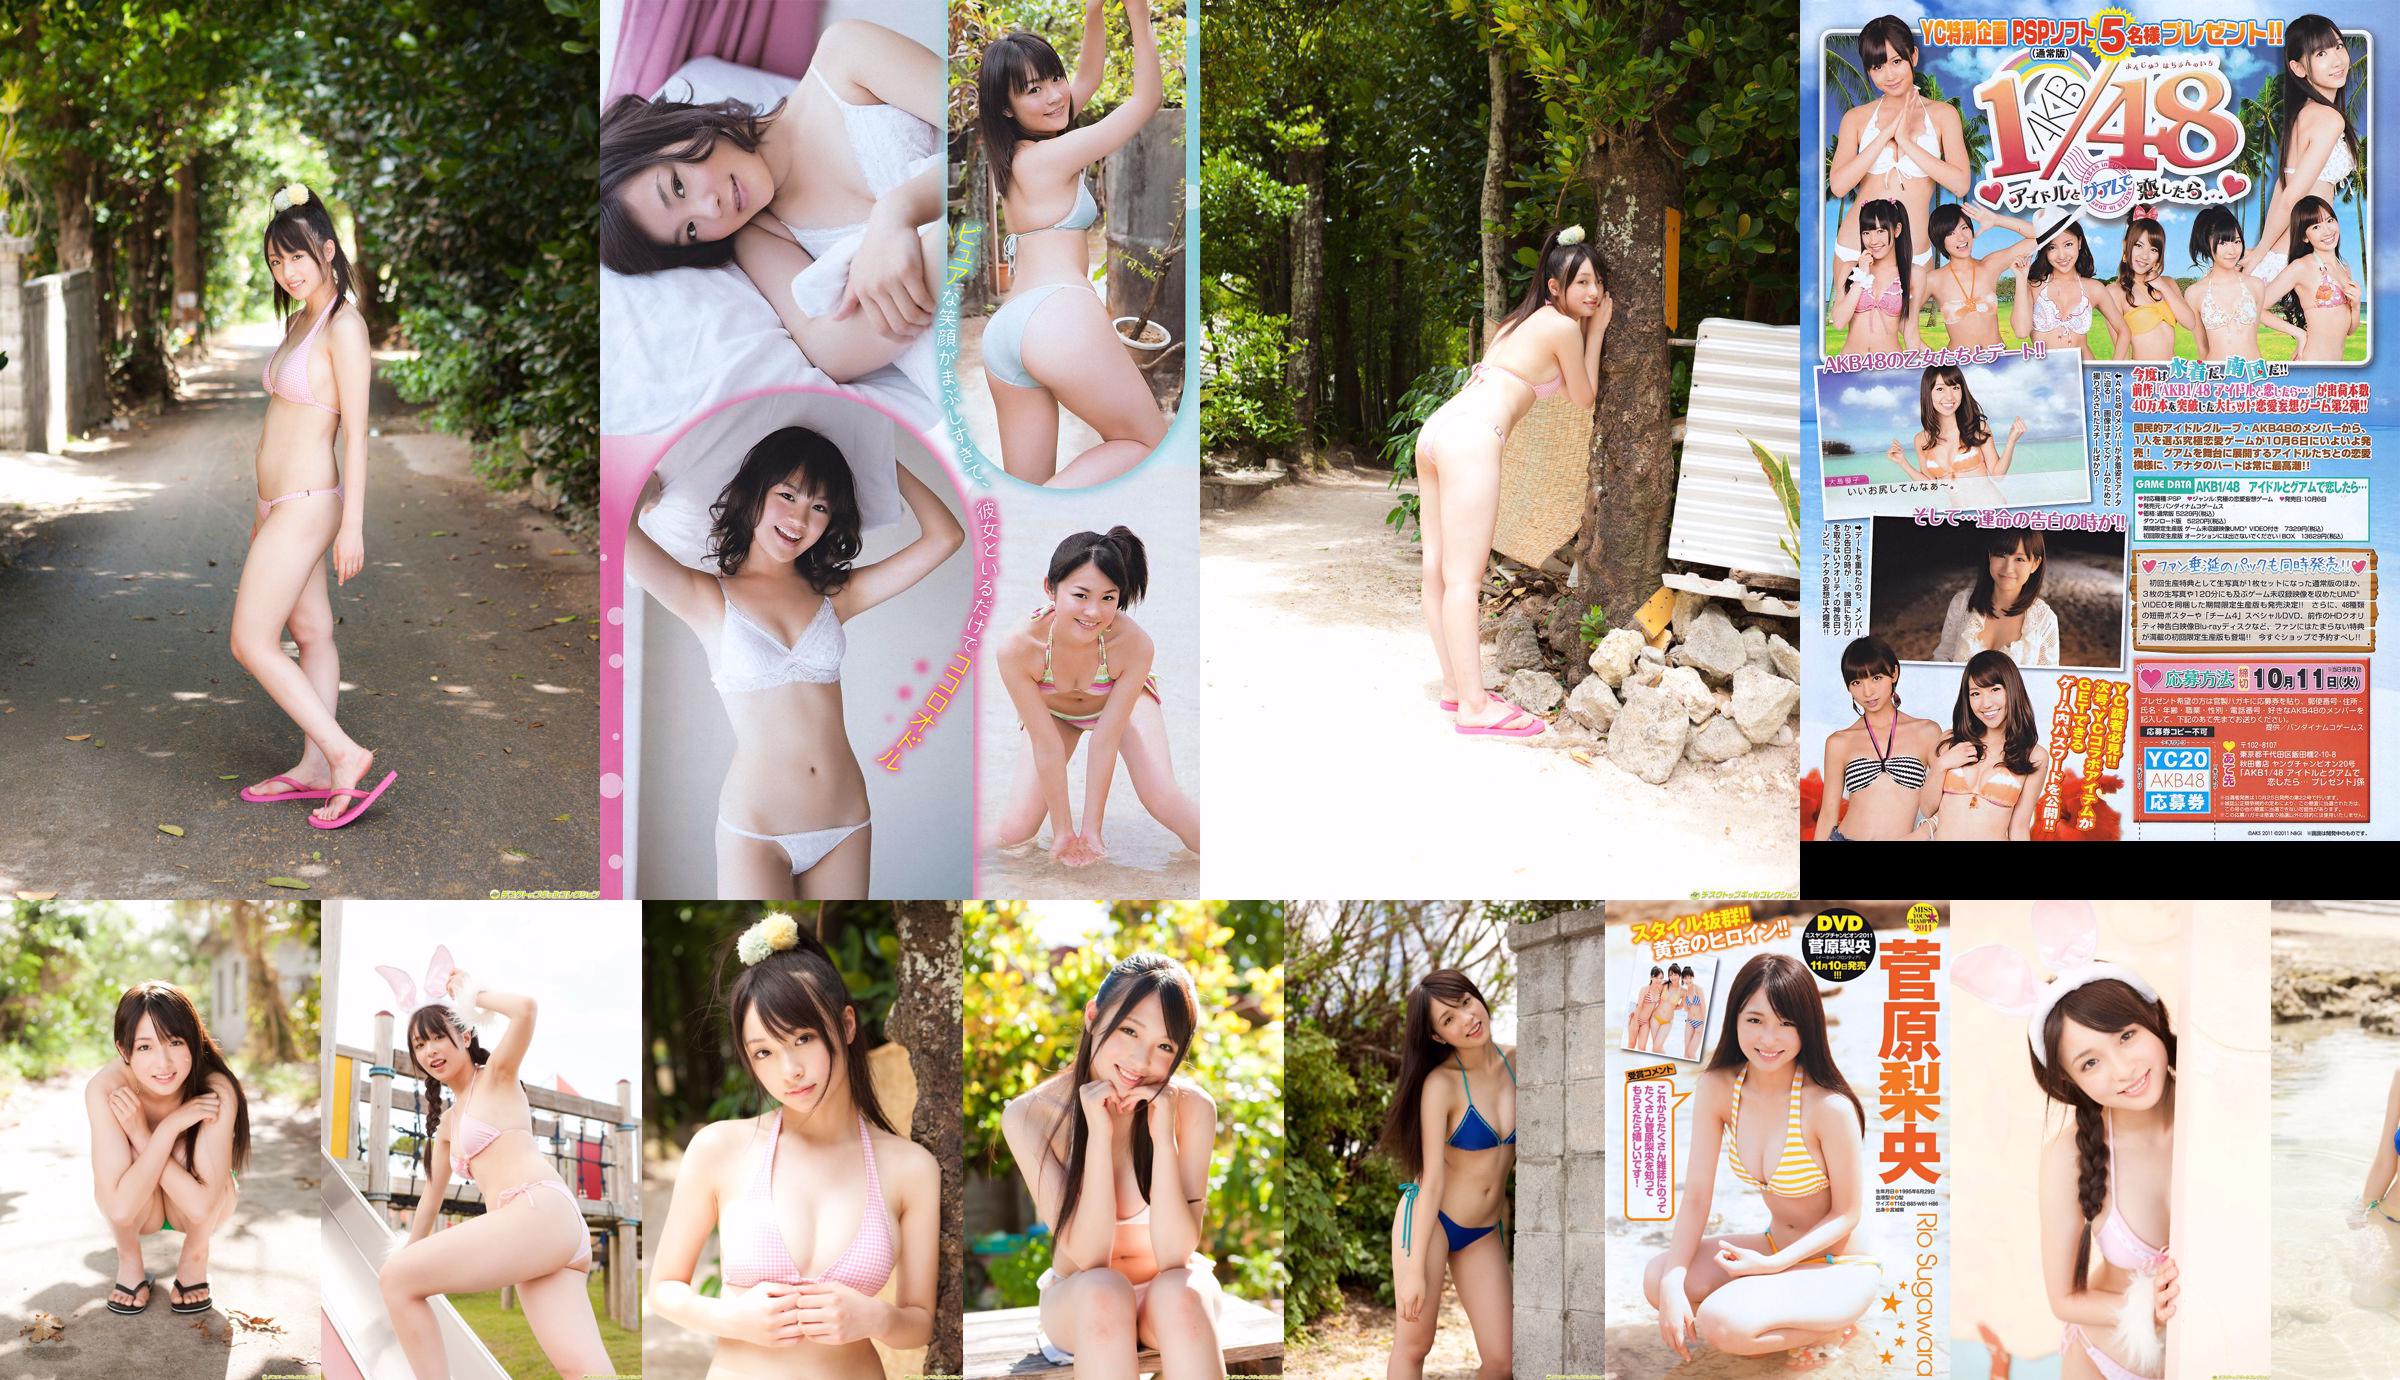 [Young Champion] Sugawara Risa, Horikawa Mikako, Matsushima no か 2011 No. 20 Photo Magazine No.5d70da Page 1